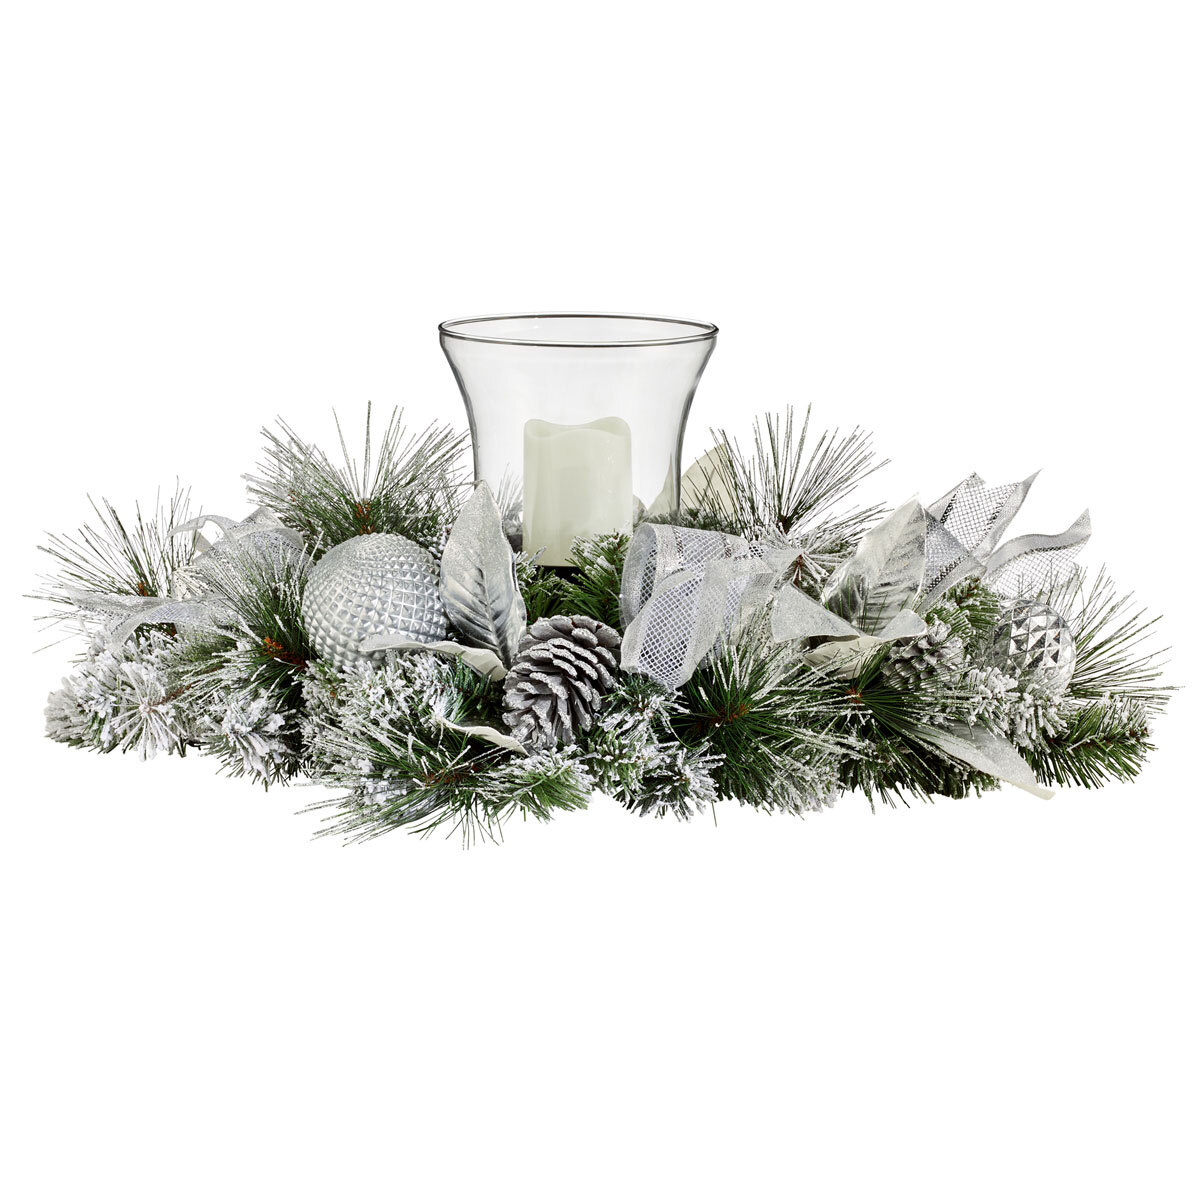 wreath centrepiece on white background